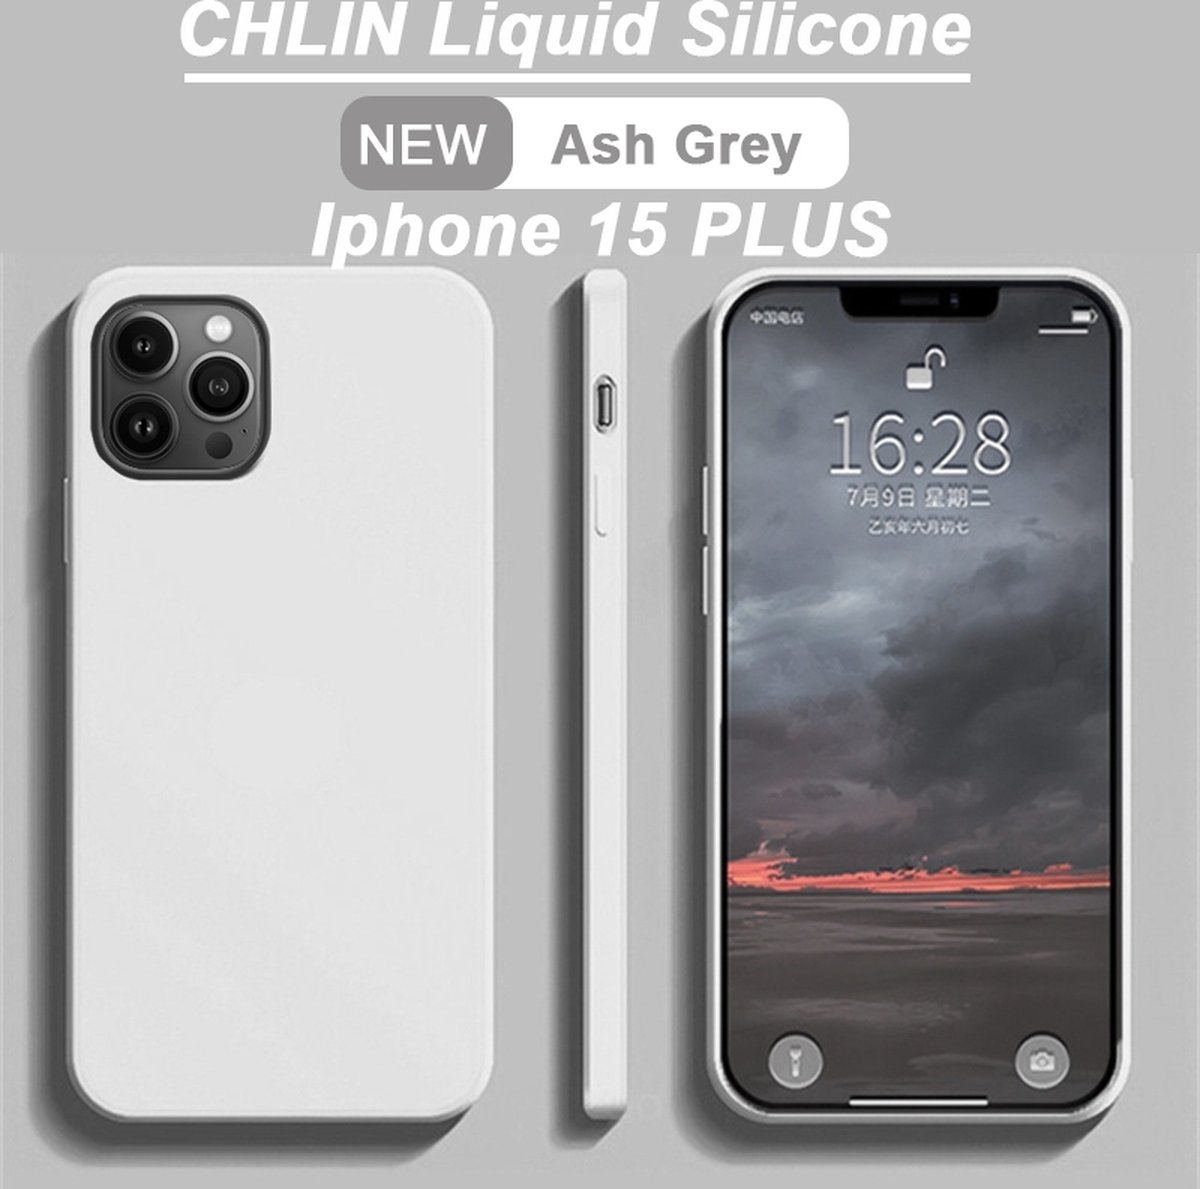 CL CHLIN® Premium Siliconen Case Iphone 15 Plus GRIJS - Iphone 15 Plus hoesje - Iphone 15 Plus case - Iphone 15 Plus hoes - Silicone hoesje - Iphone 15 Plus protection - Iphone 15 Plus protector.